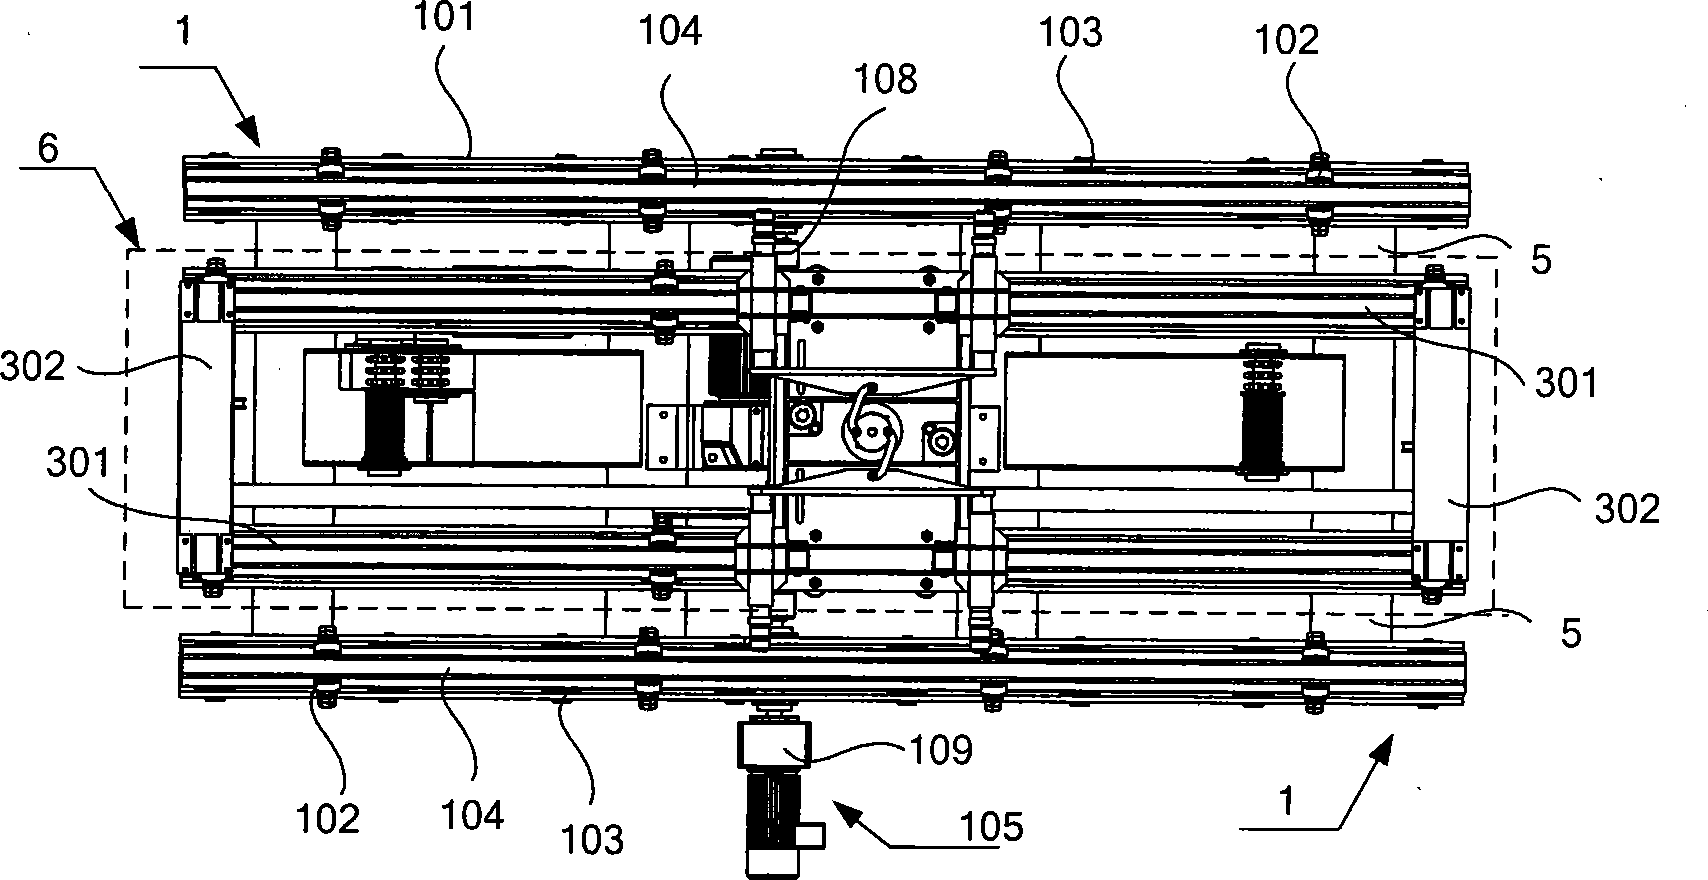 Fork mechanism of stacker